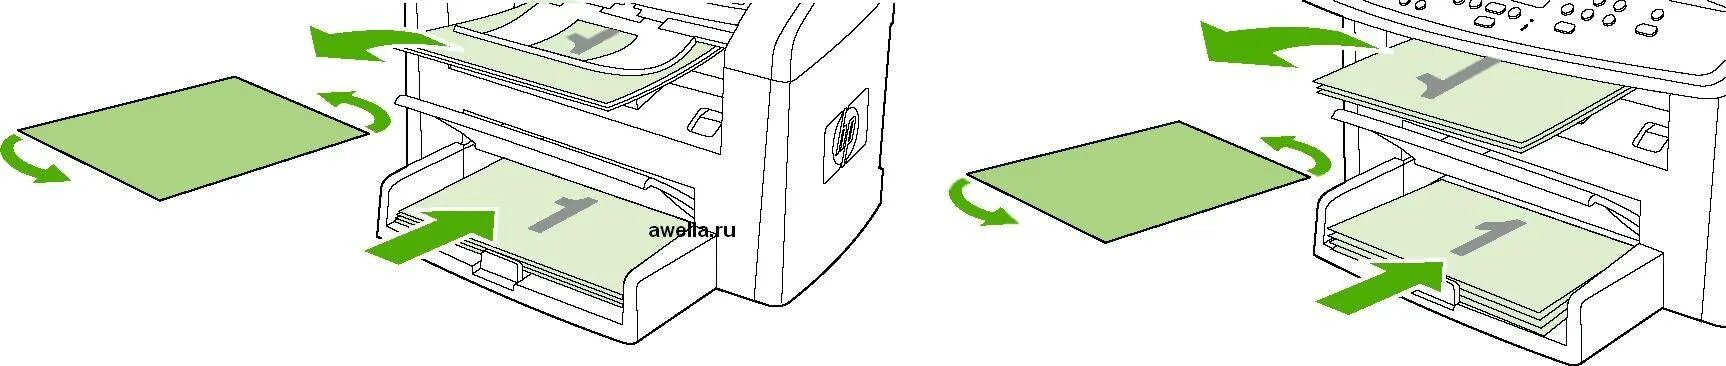 Двусторонняя печать как переворачивать. Принтер Samsung двусторонняя печать. Лоток двухсторонняя печать) принтера бротхер.